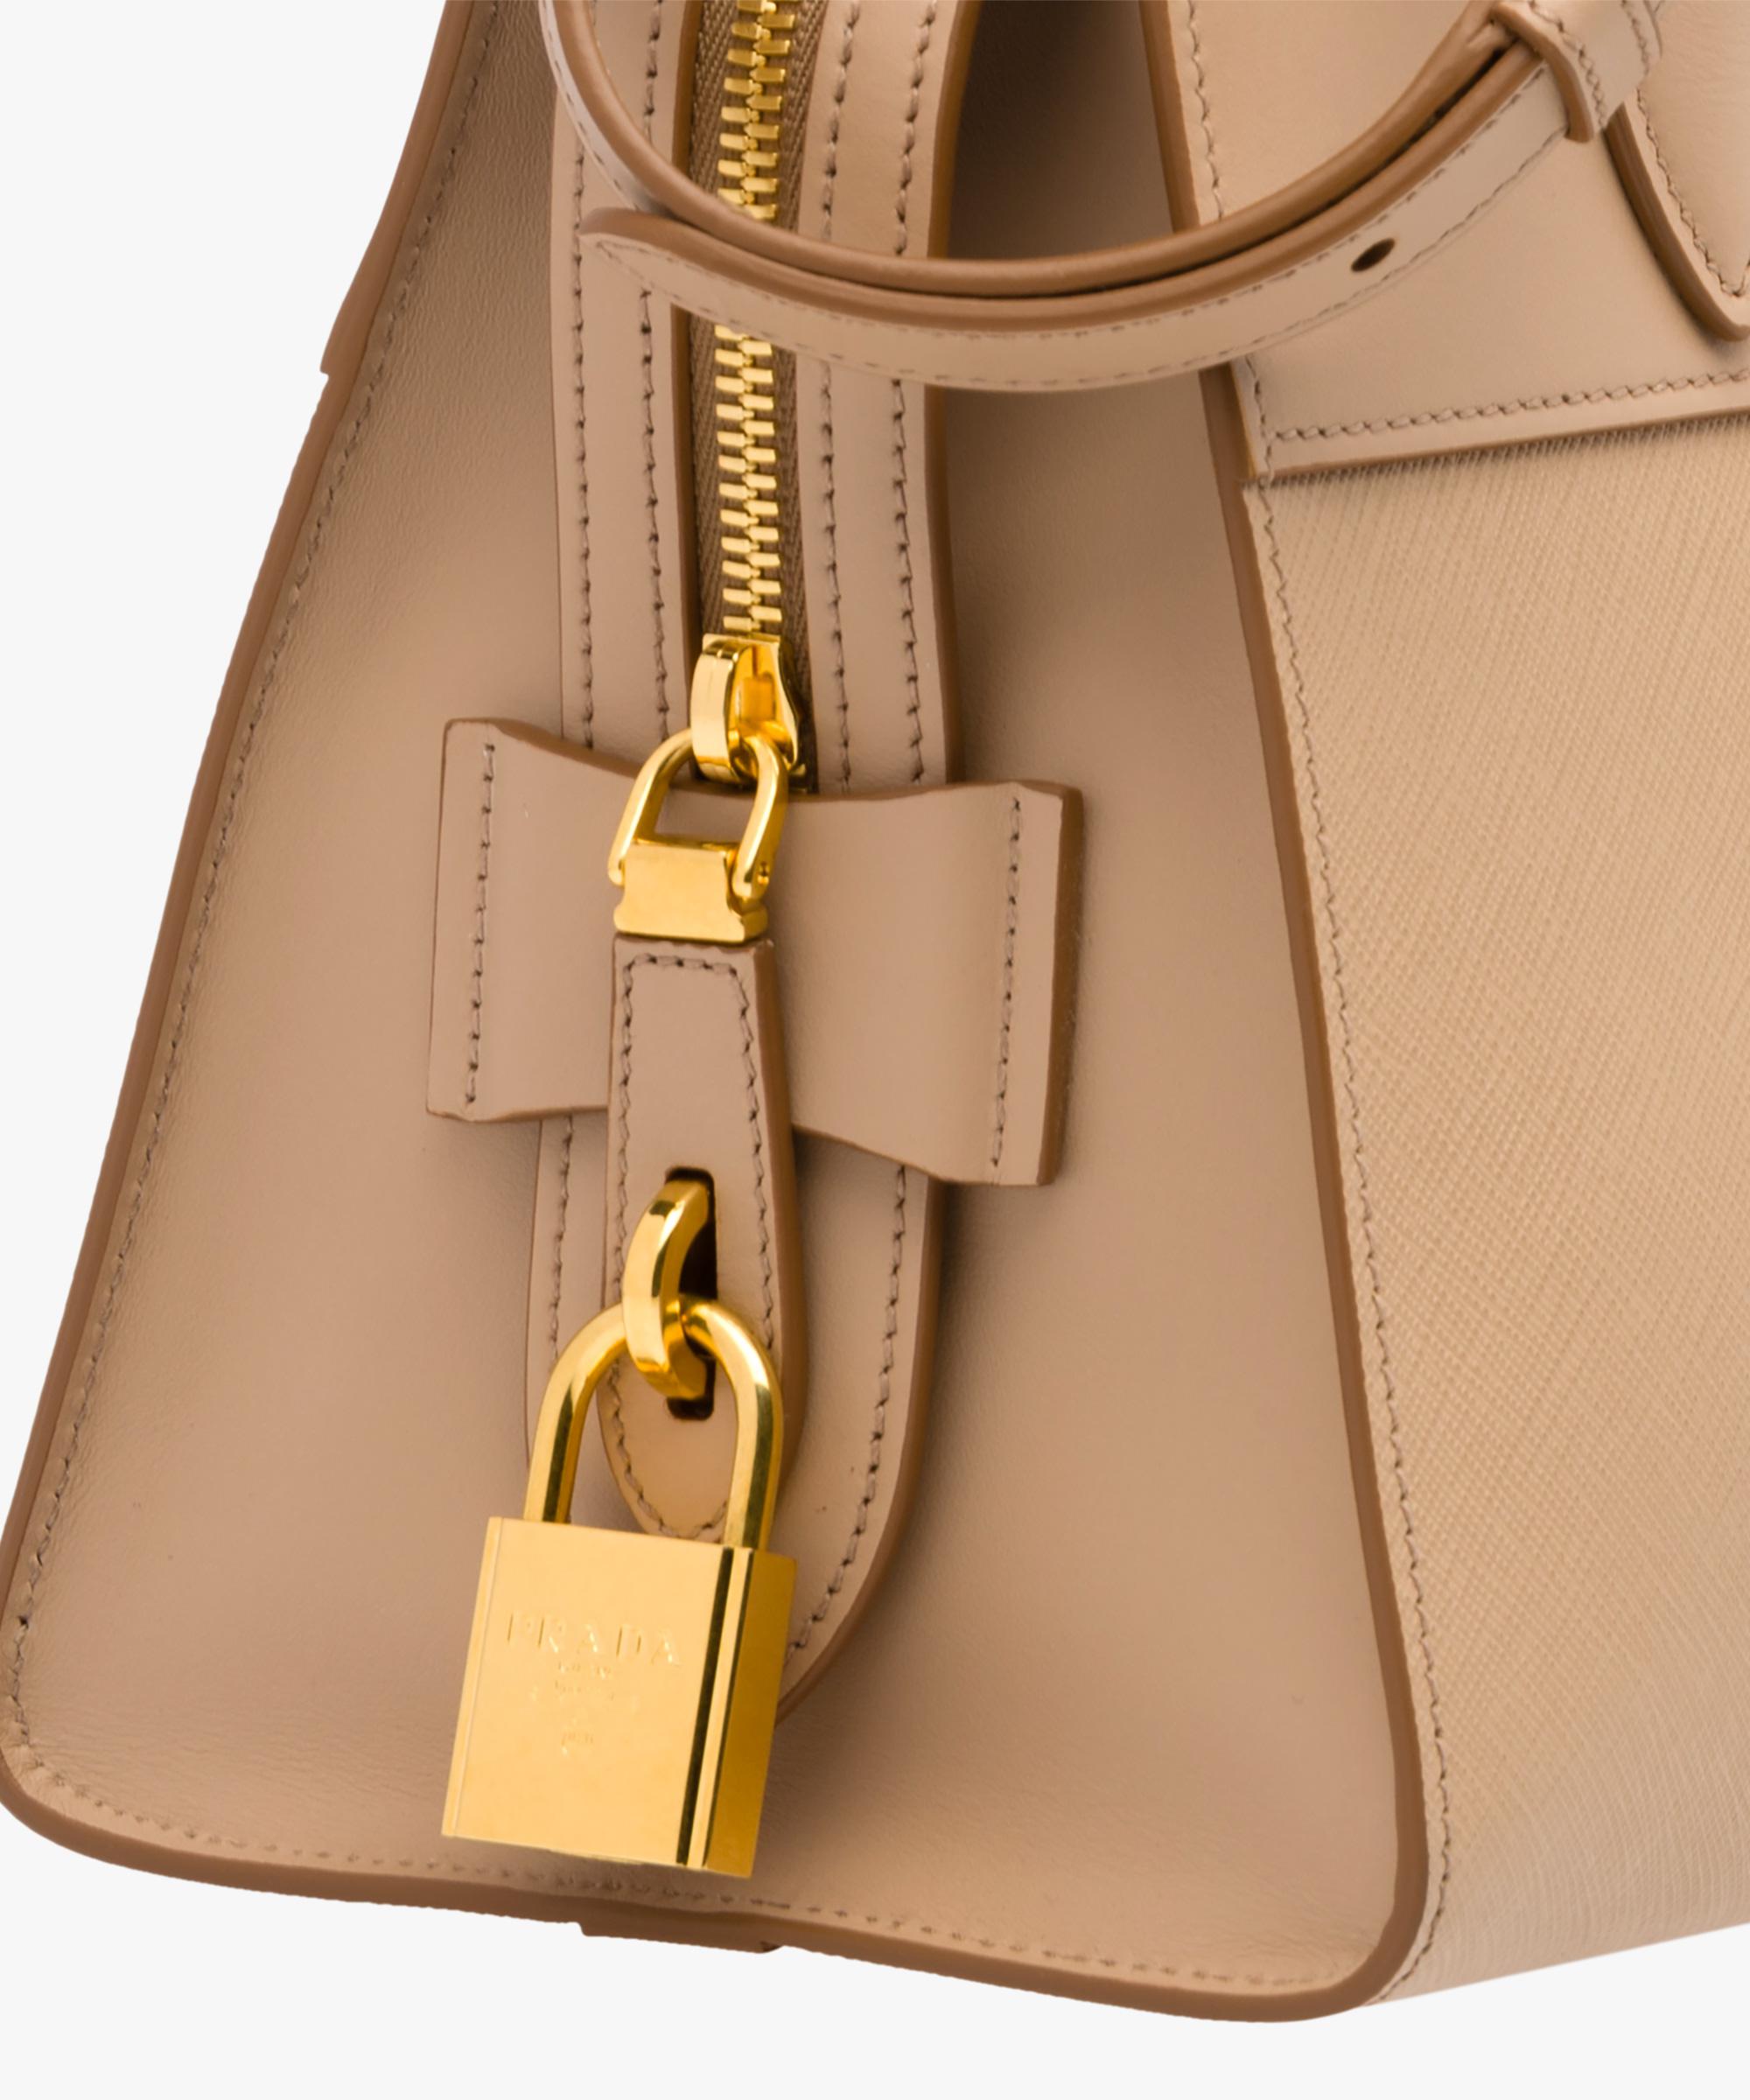 Prada Beige Saffiano Leather Esplanade Shoulder Bag Prada